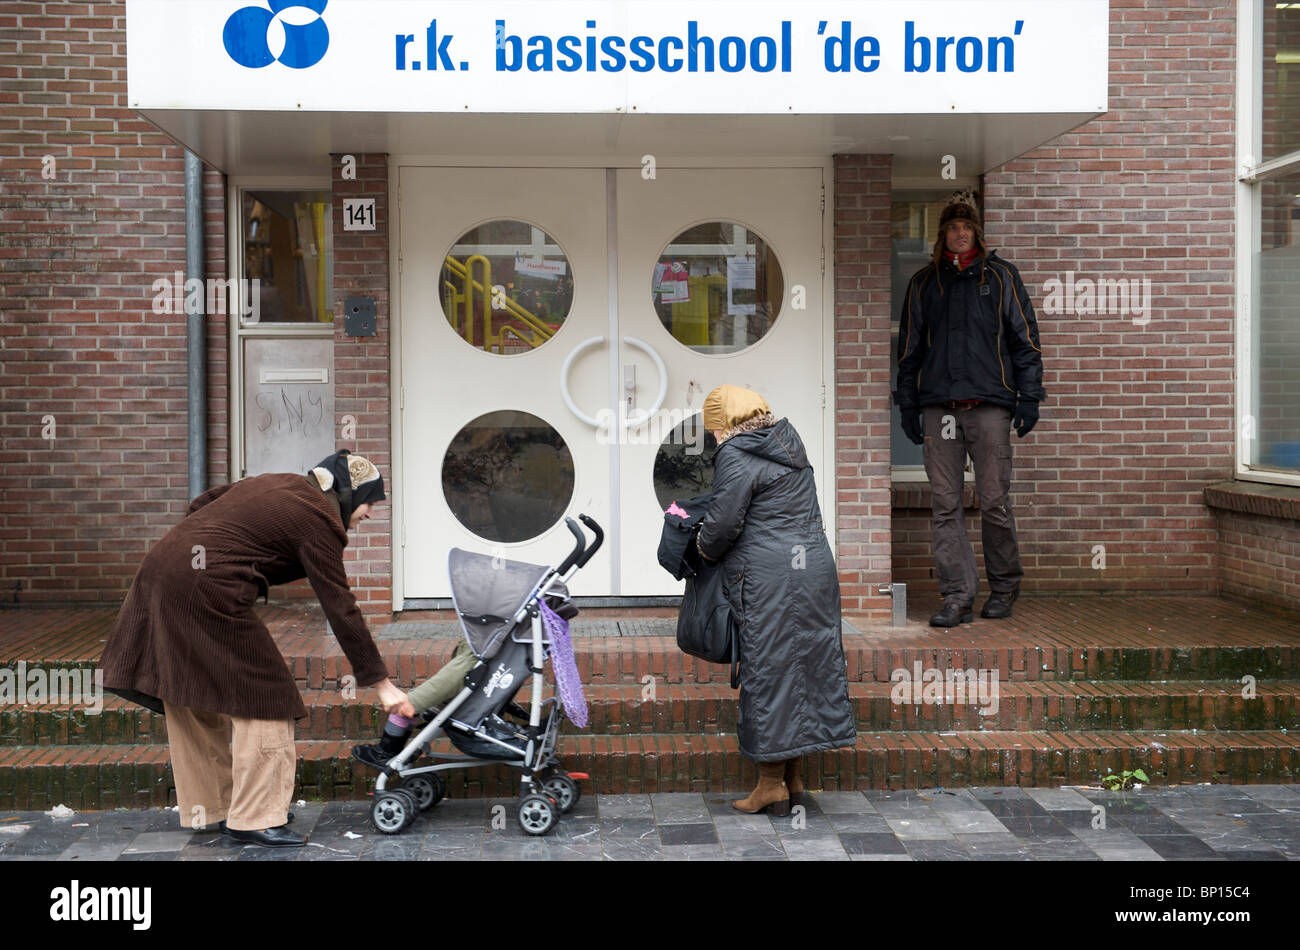 Amsterdam, Oud-West, Moslima die Wachten Op Hun Kinderen Bij de RK Basisschool de bron Stockfoto